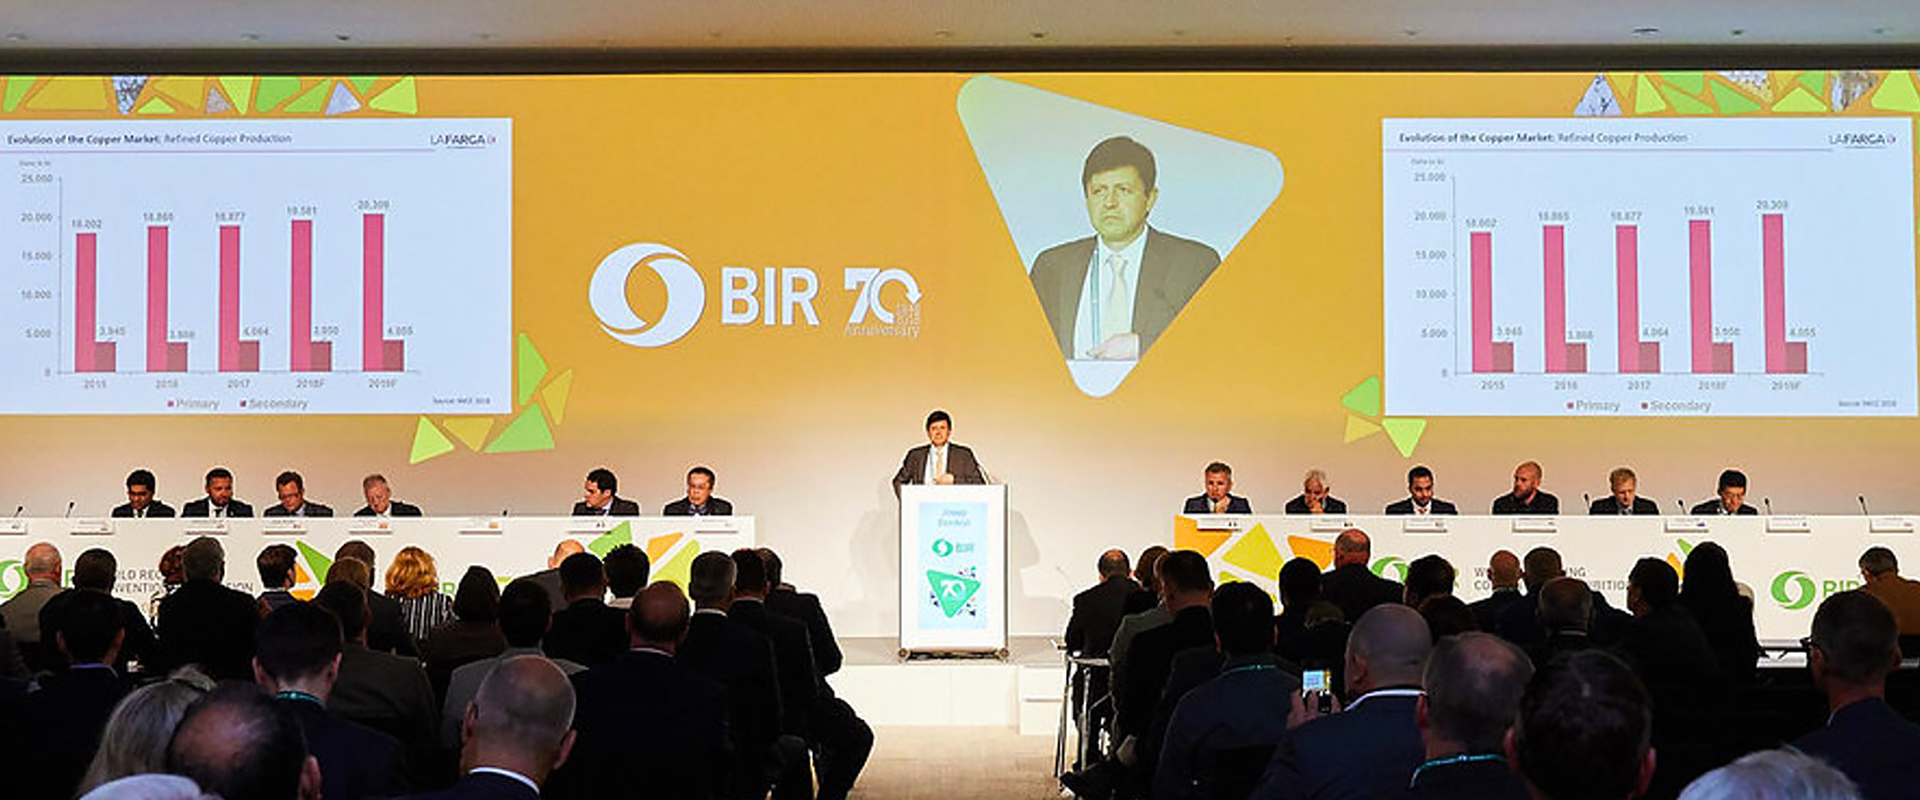 bps konferenz BIR 15.jpg